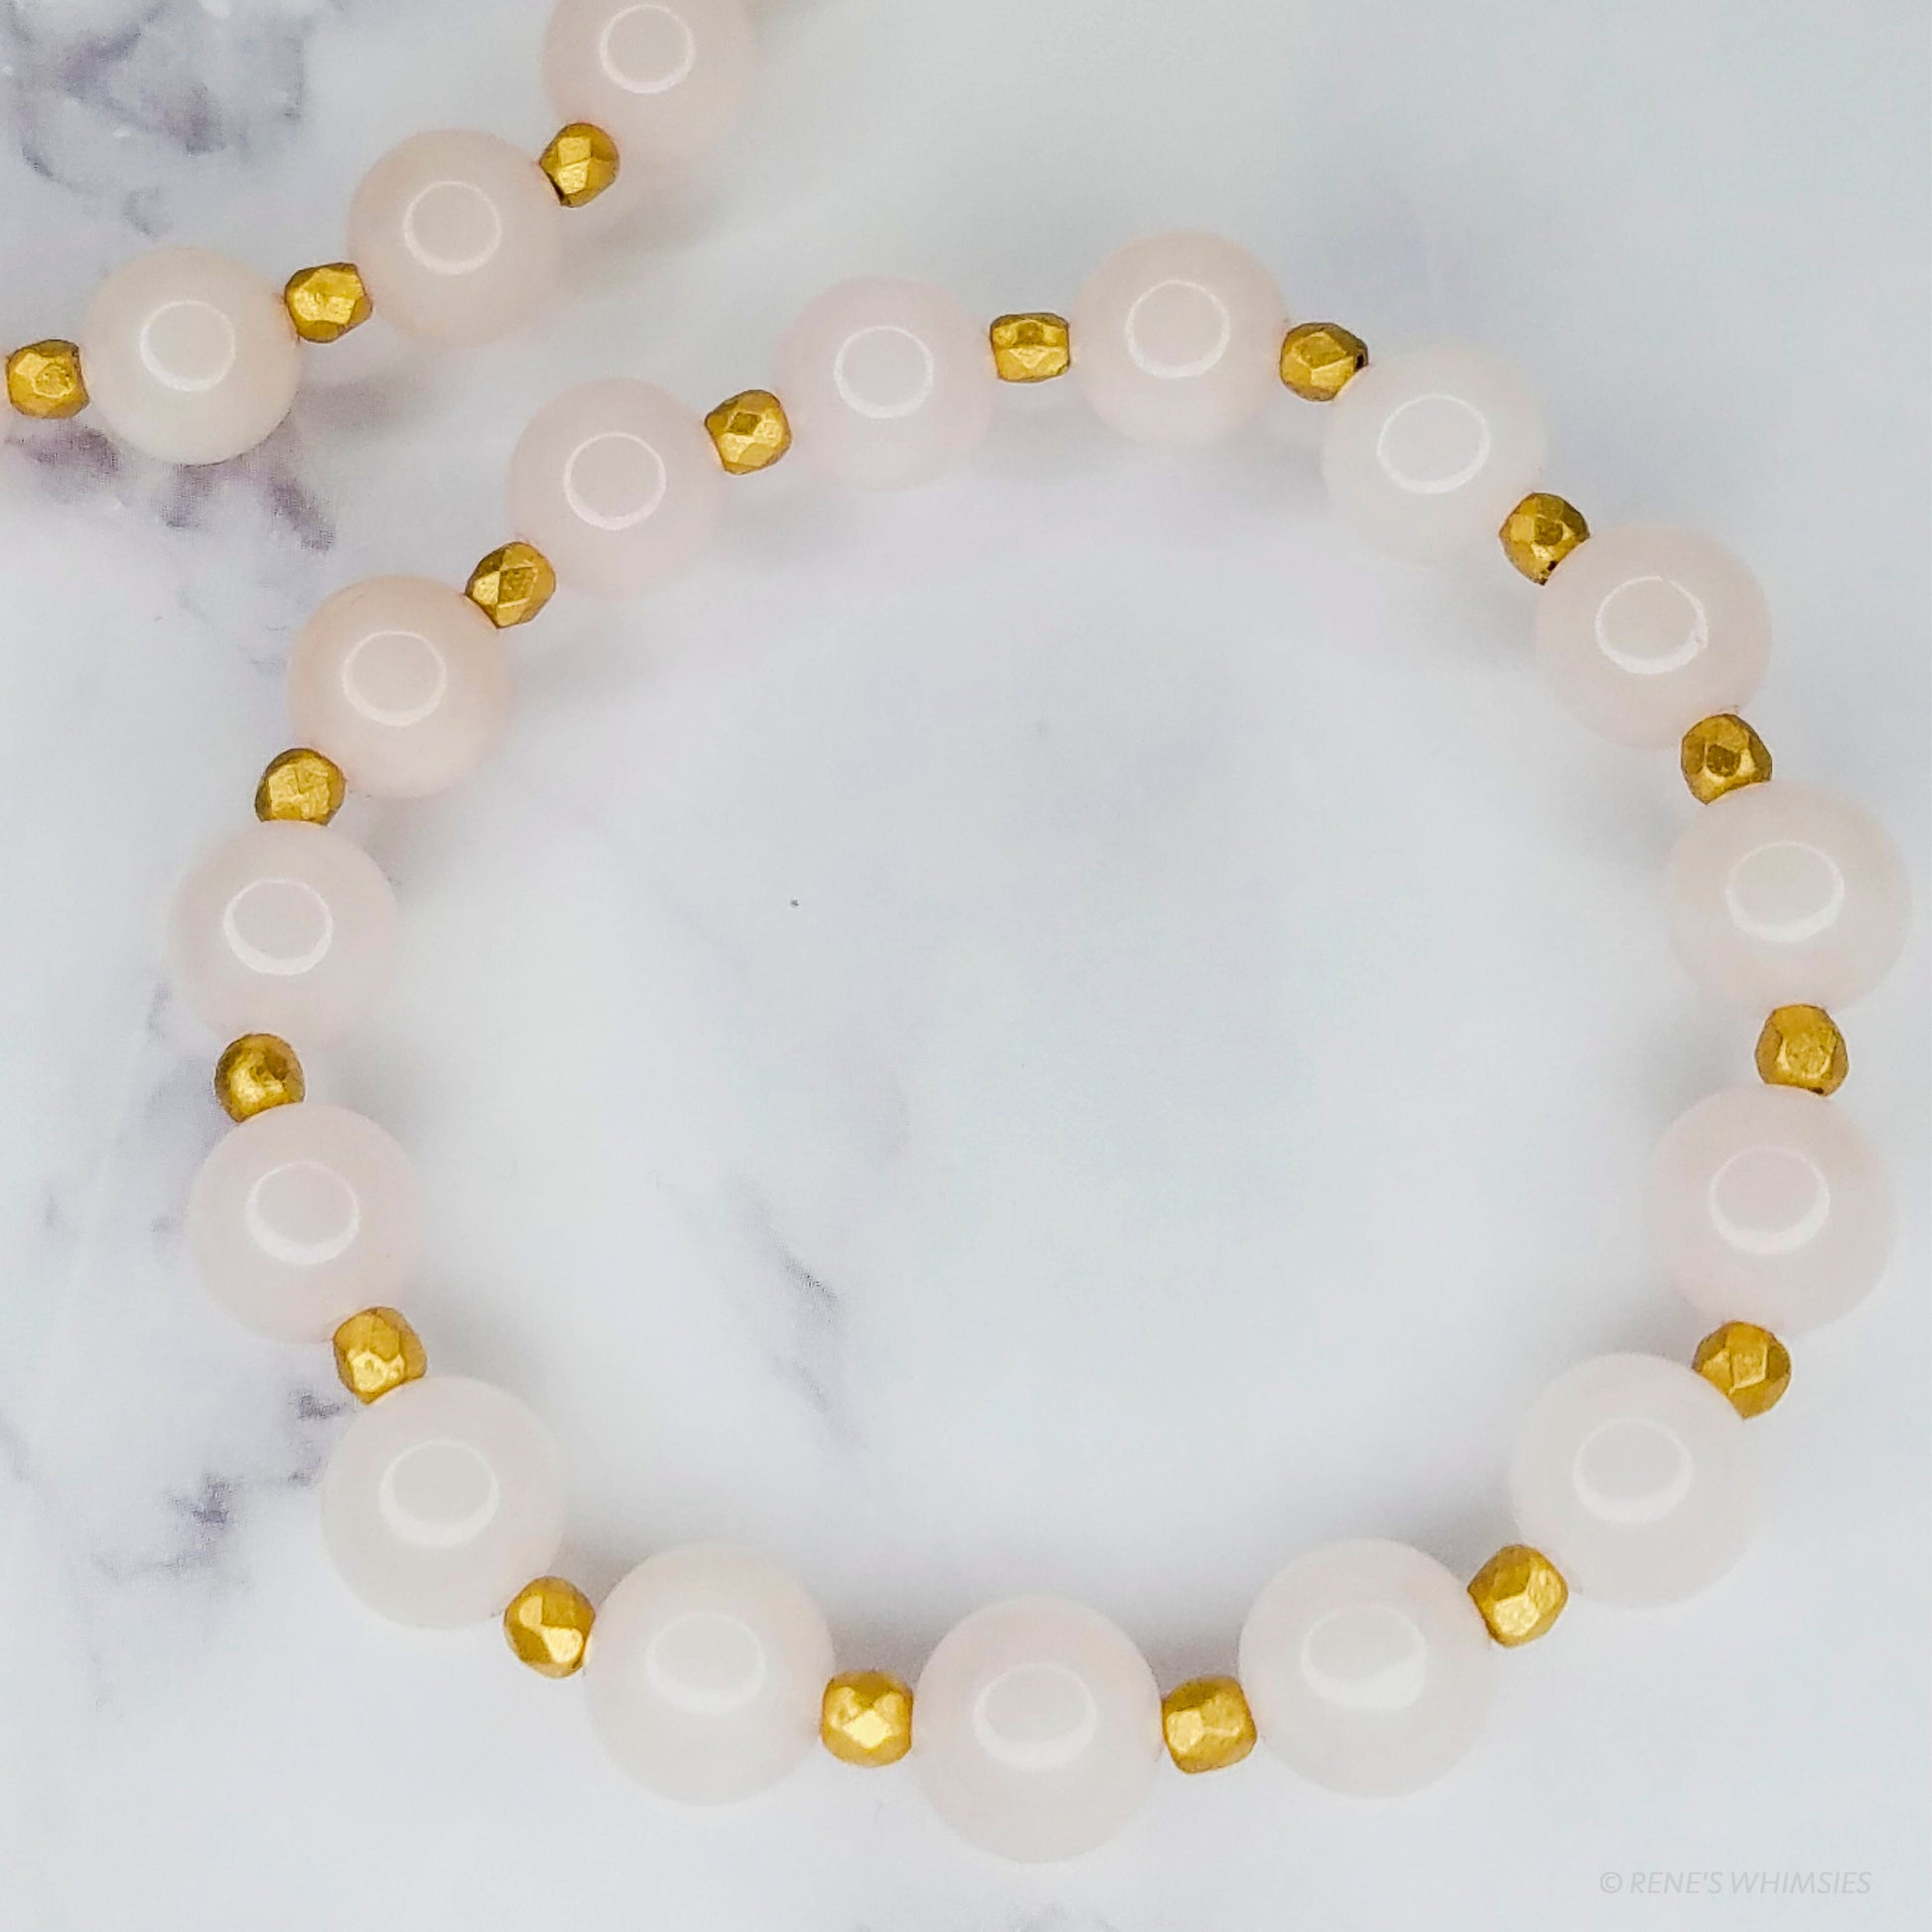 Rose Gold Bracelet | Natural Crystal Stretch Bracelets - Rene's Whimsies